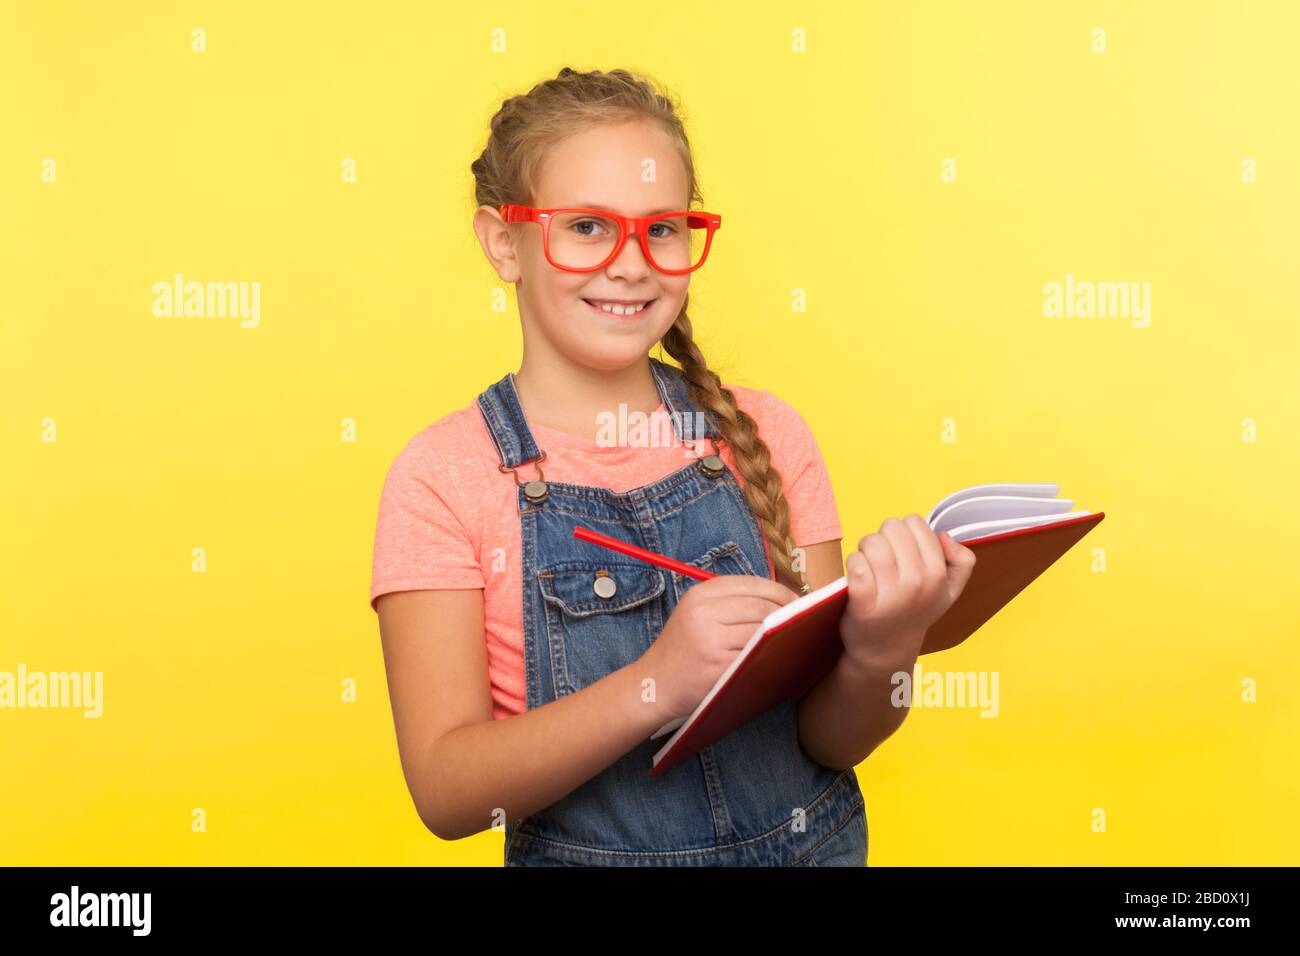 Porträt eines glücklichen, cleveren kleinen Mädchens in roter Brille, das Notizbuch und Bleistifte hält, mit der Kamera lächelt, kreative Ideen schreibt und interessante Lehrbücher genießt Stockfoto